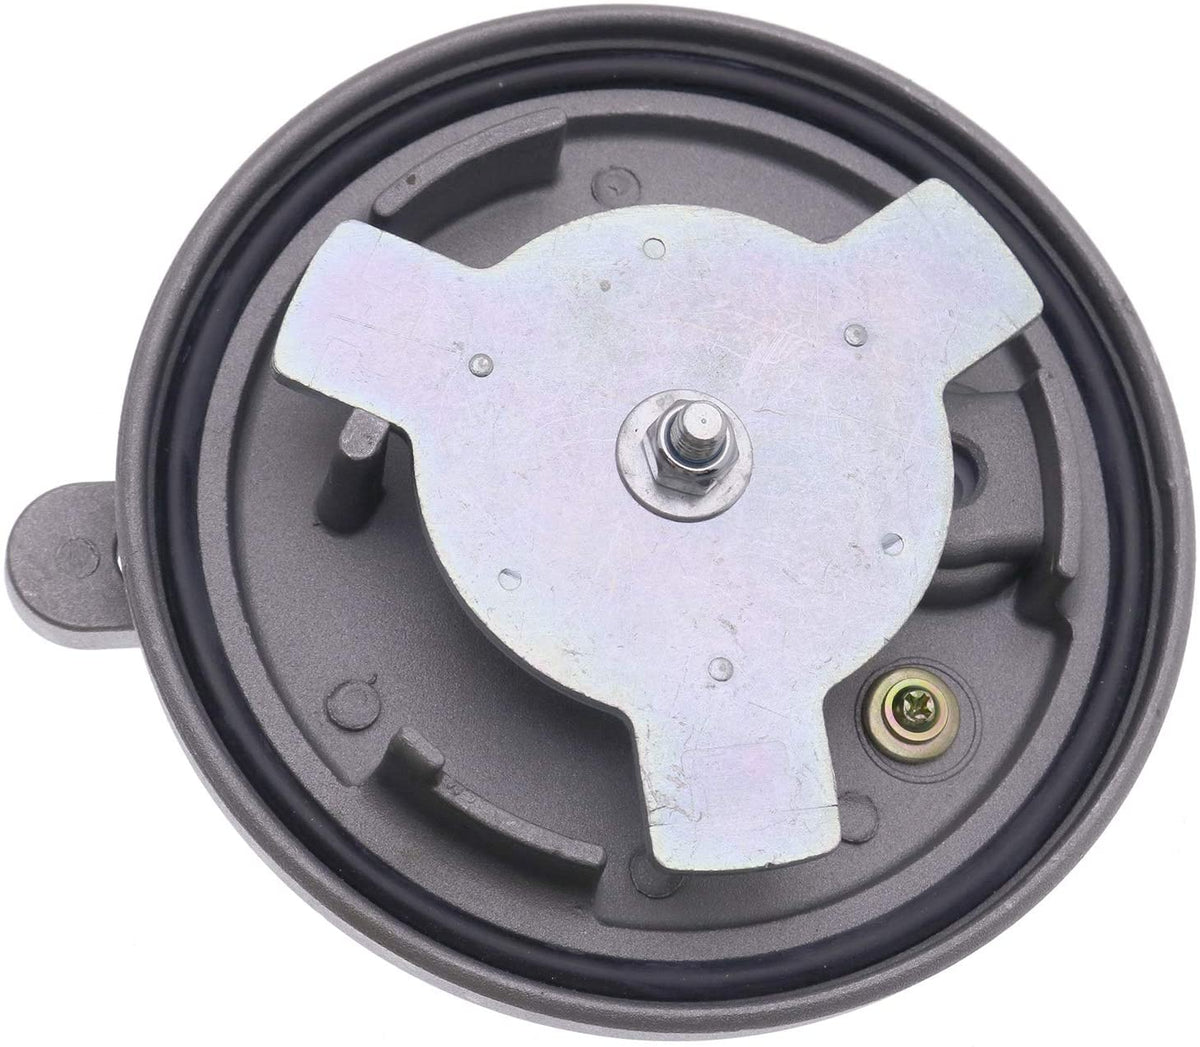 Locking Fuel Cap 7X7700 for Caterpillar Dozers D3C III, D3G, D4C III, D4G, D4H, D5C III With 1 Year Warranty - KUDUPARTS